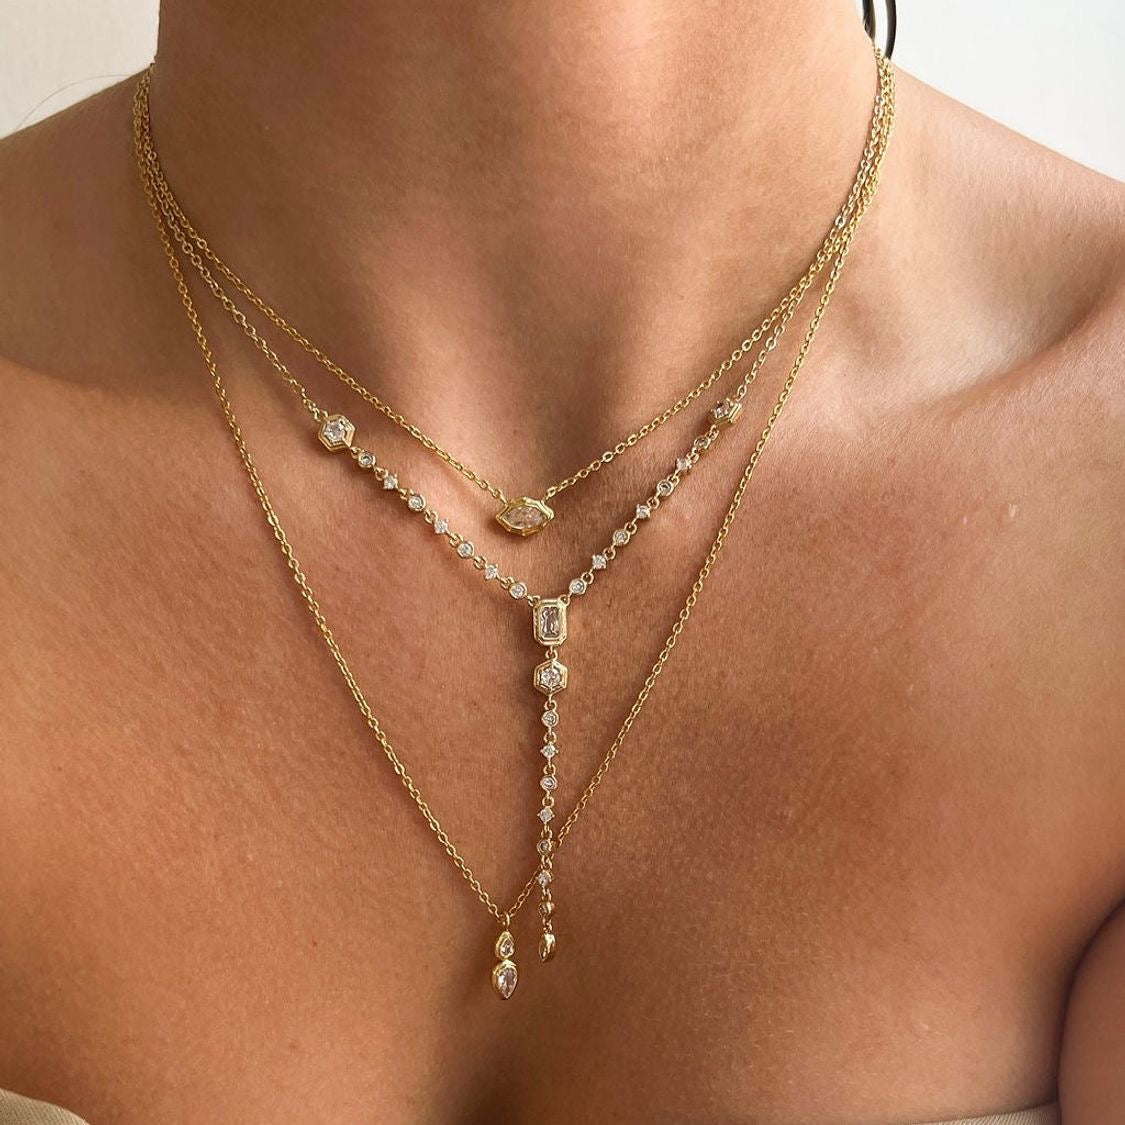 Stephania necklace